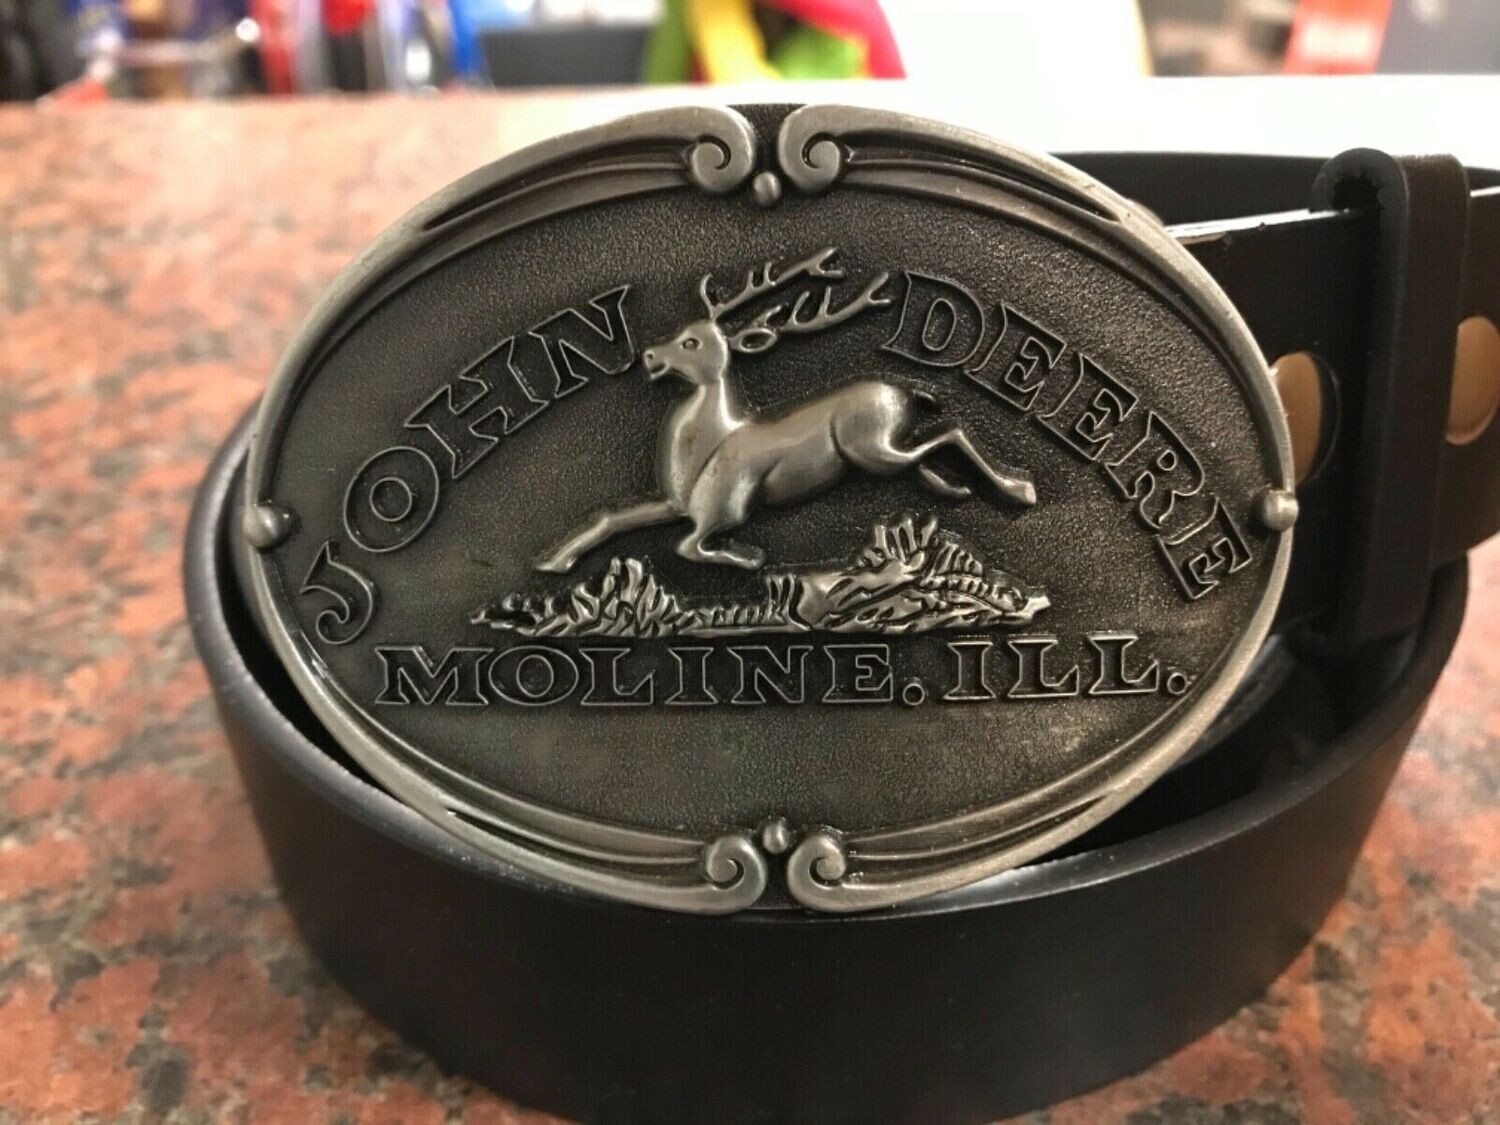 John Deere Logo silver oval buckle with belt